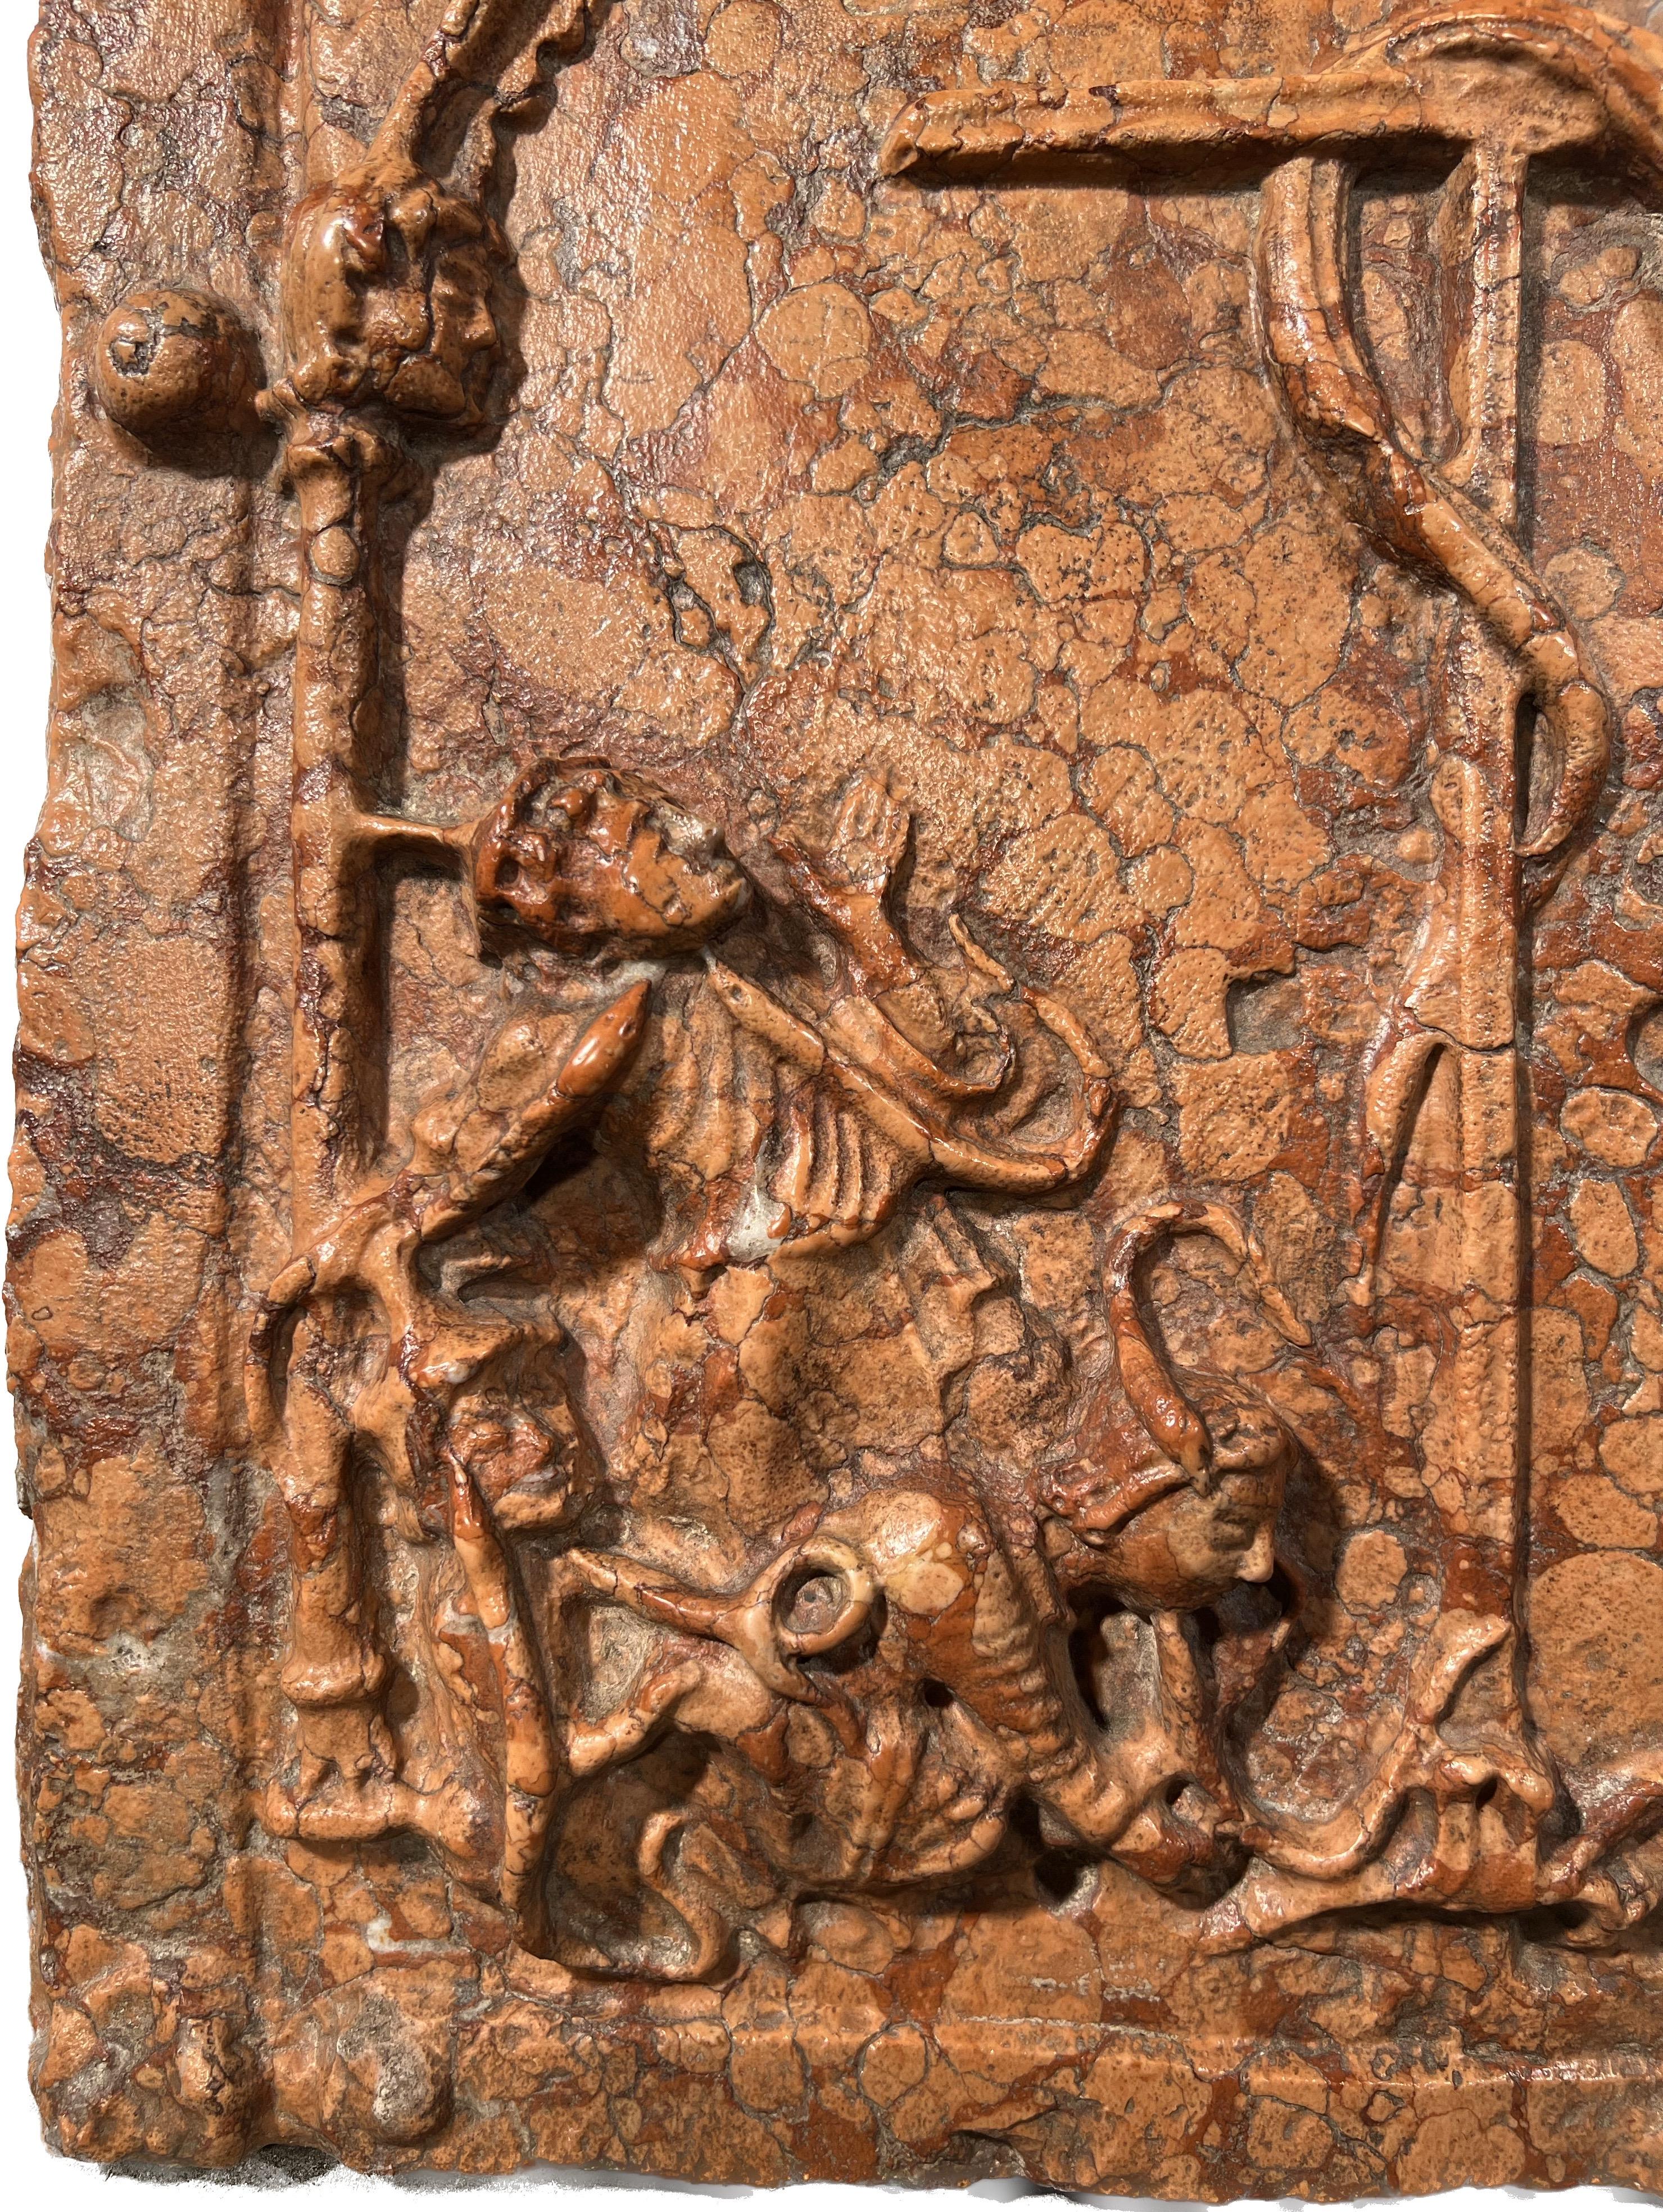 Moïse et le serpent de bronze représenté dans une sculpture en bas-relief en italien Marmo Ross di Verona.
Réplique artisanale d'un artefact de la Croix Tau du XIIIe siècle.
Serpent d'airain (Nehushtan), Ancien Testament judéo-chrétien :
Dans le